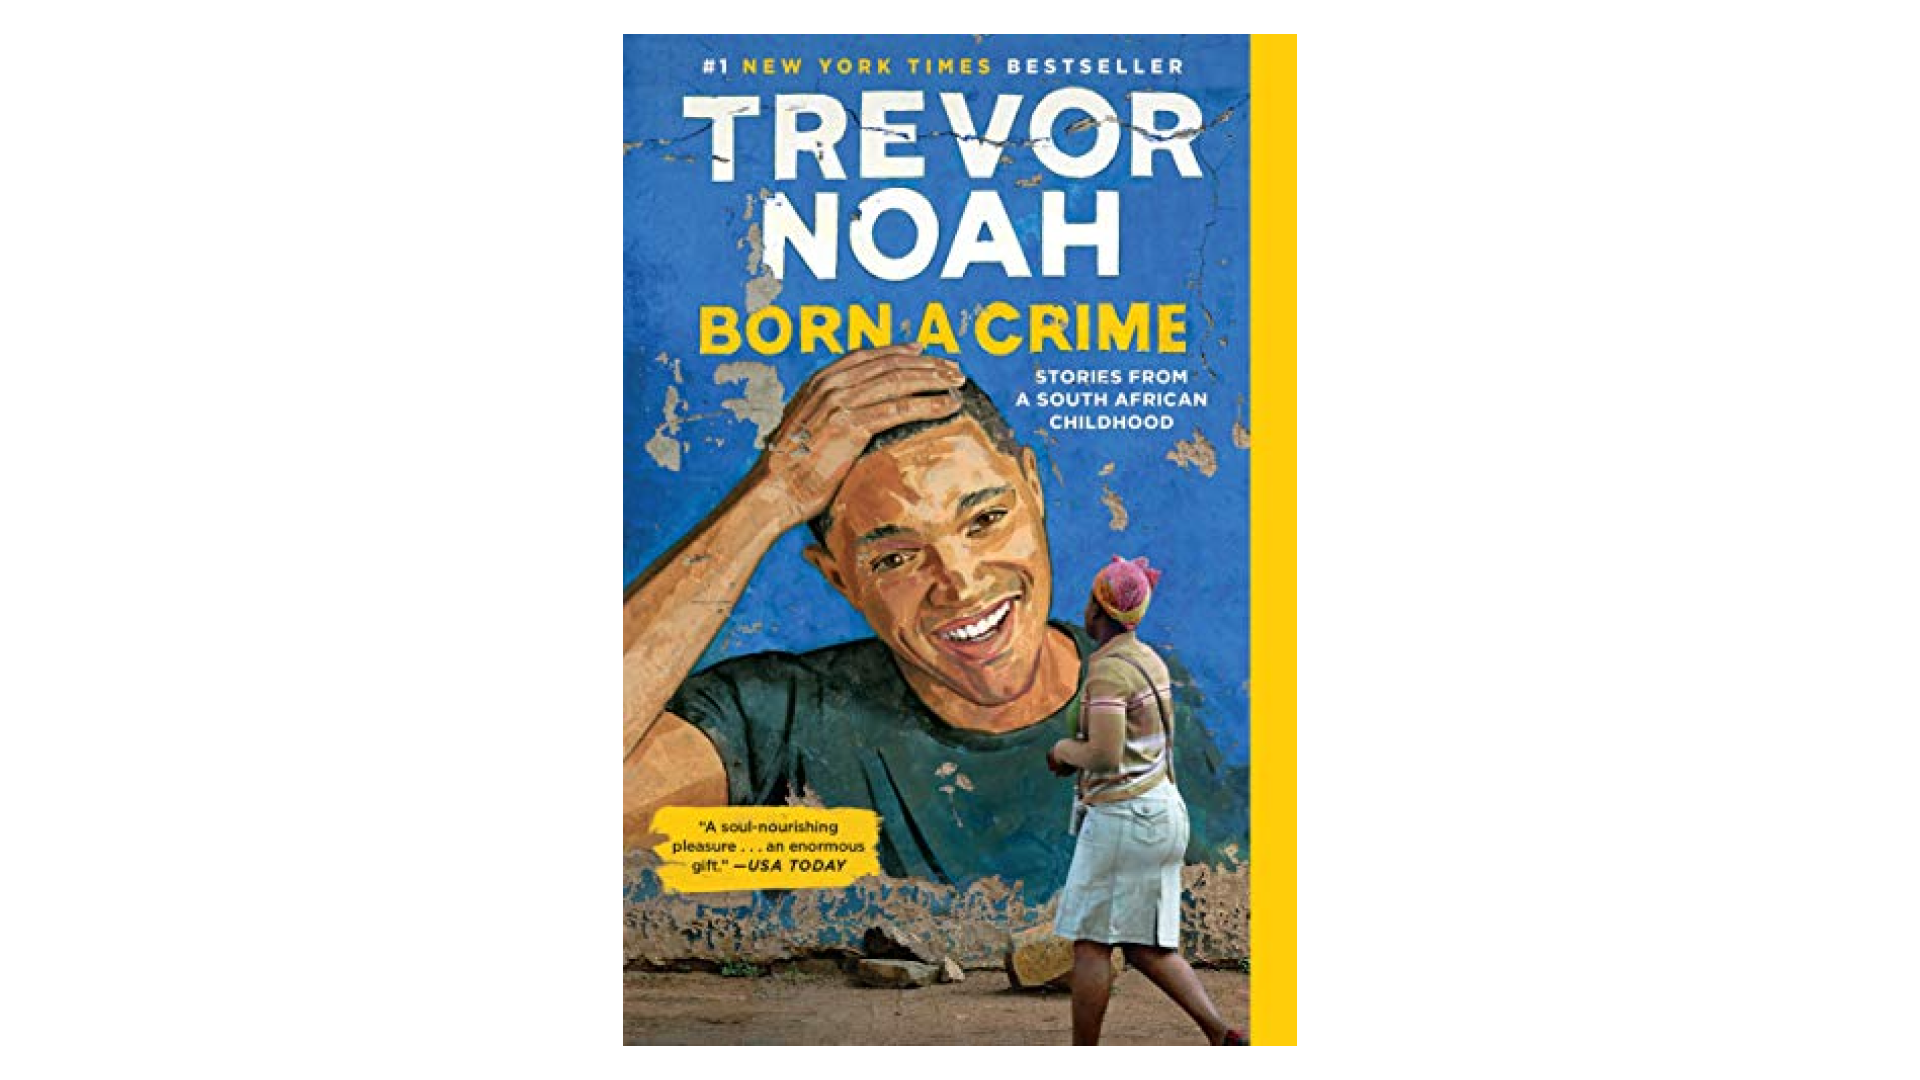 “Born a Crime” by Trevor Noah…